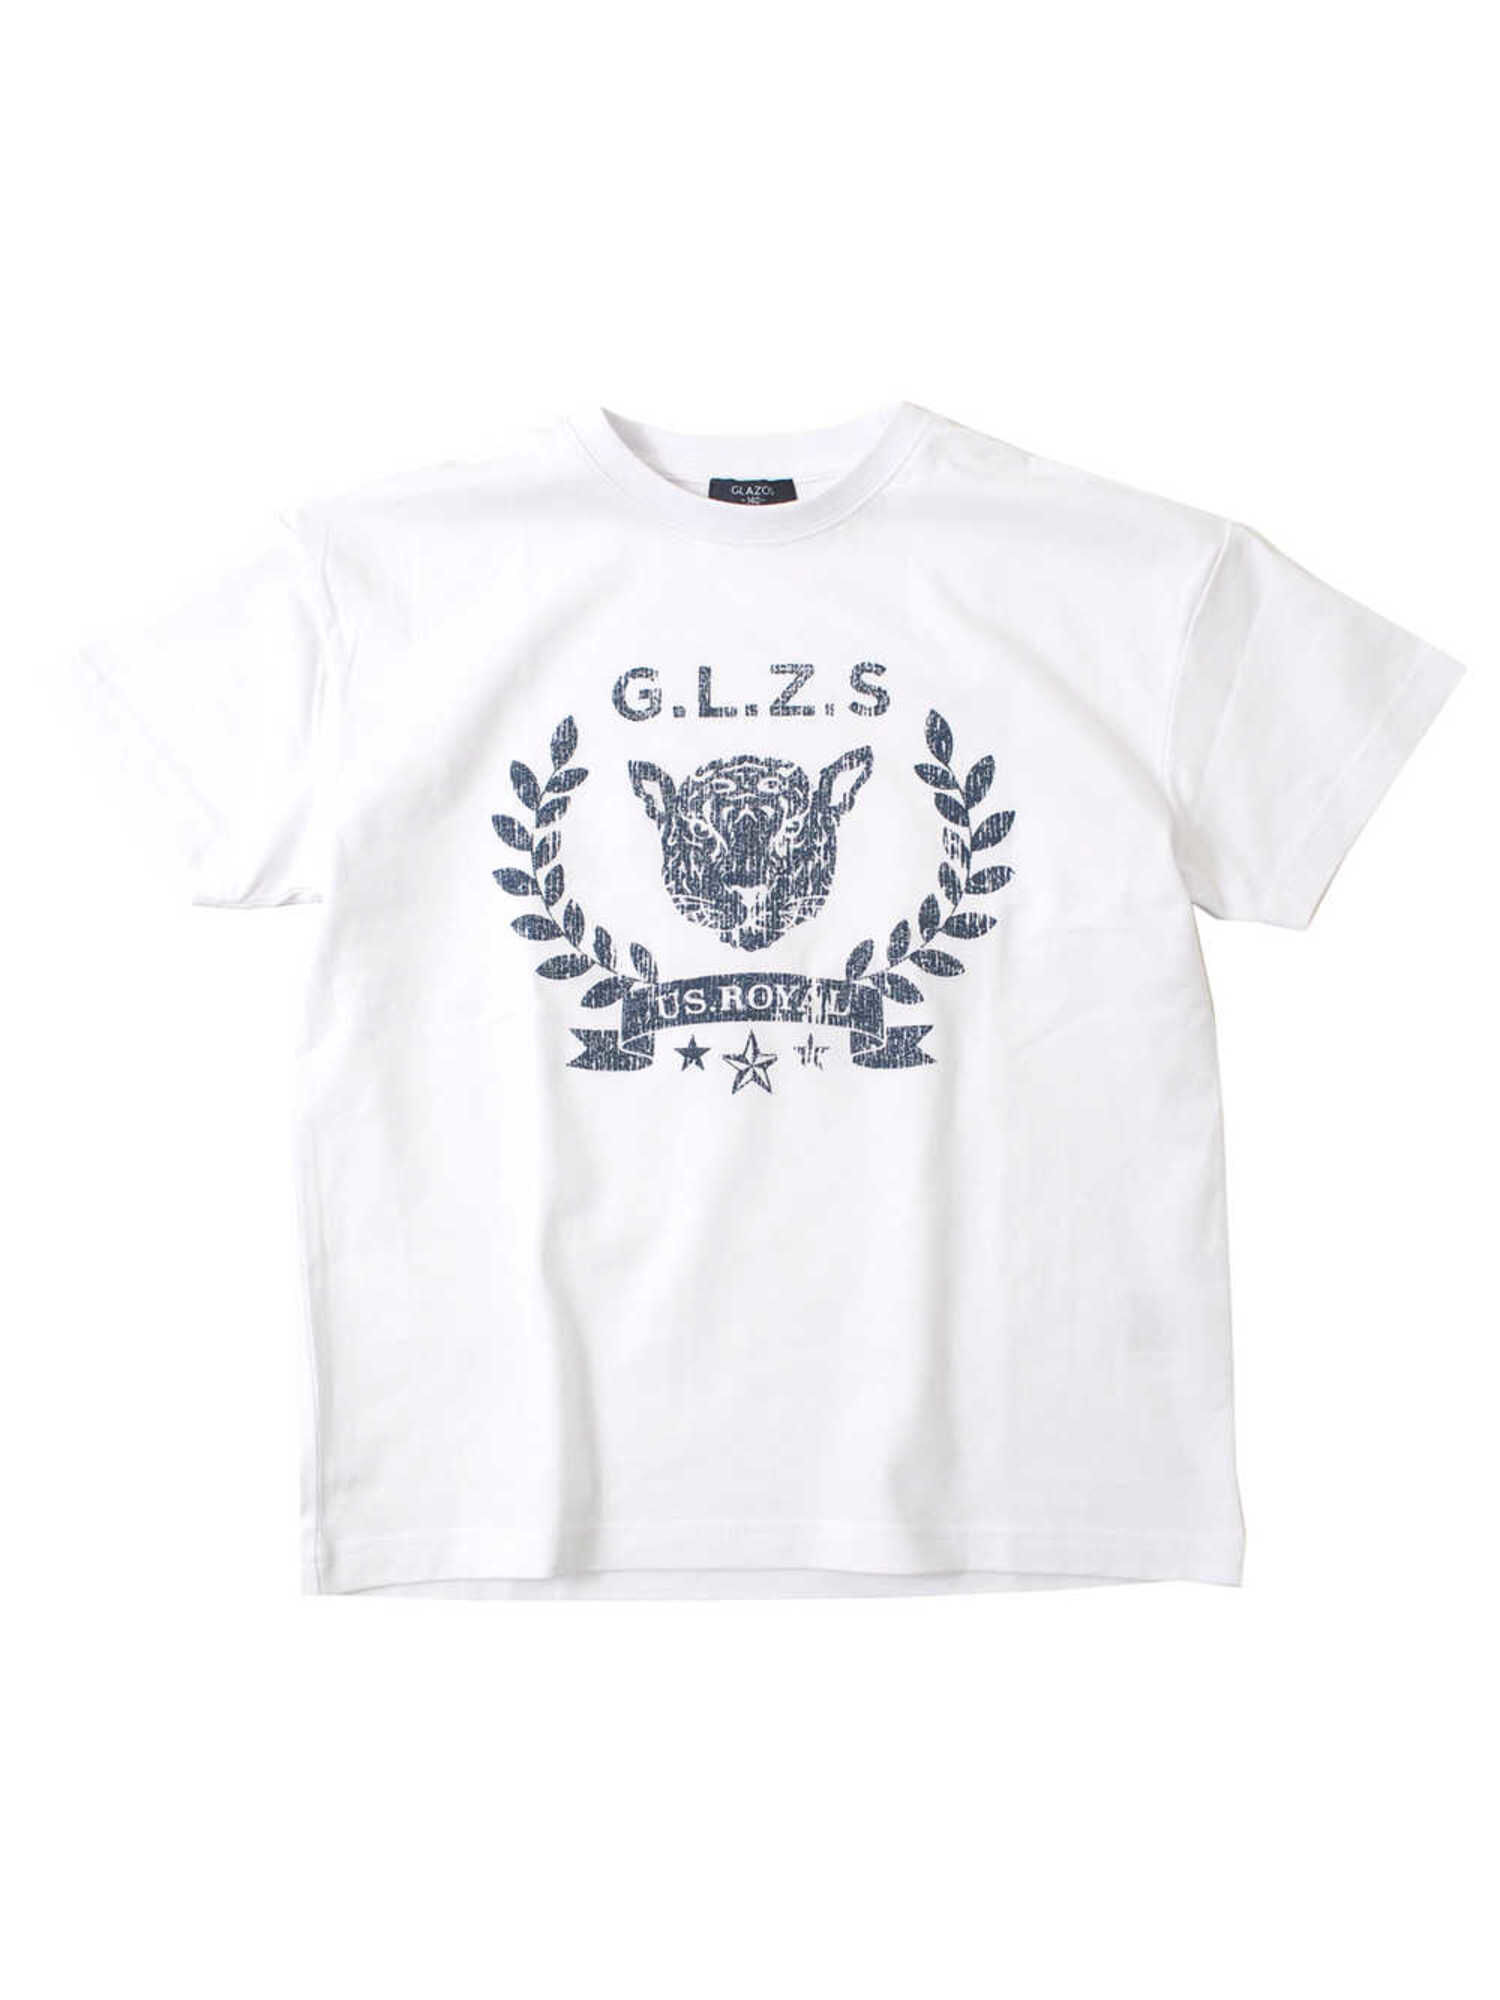 【6,000円(税込)以上のお買物で全国送料無料。】【GLAZOS】天竺・ドロップショルダーパンサープリント半袖Tシャツ